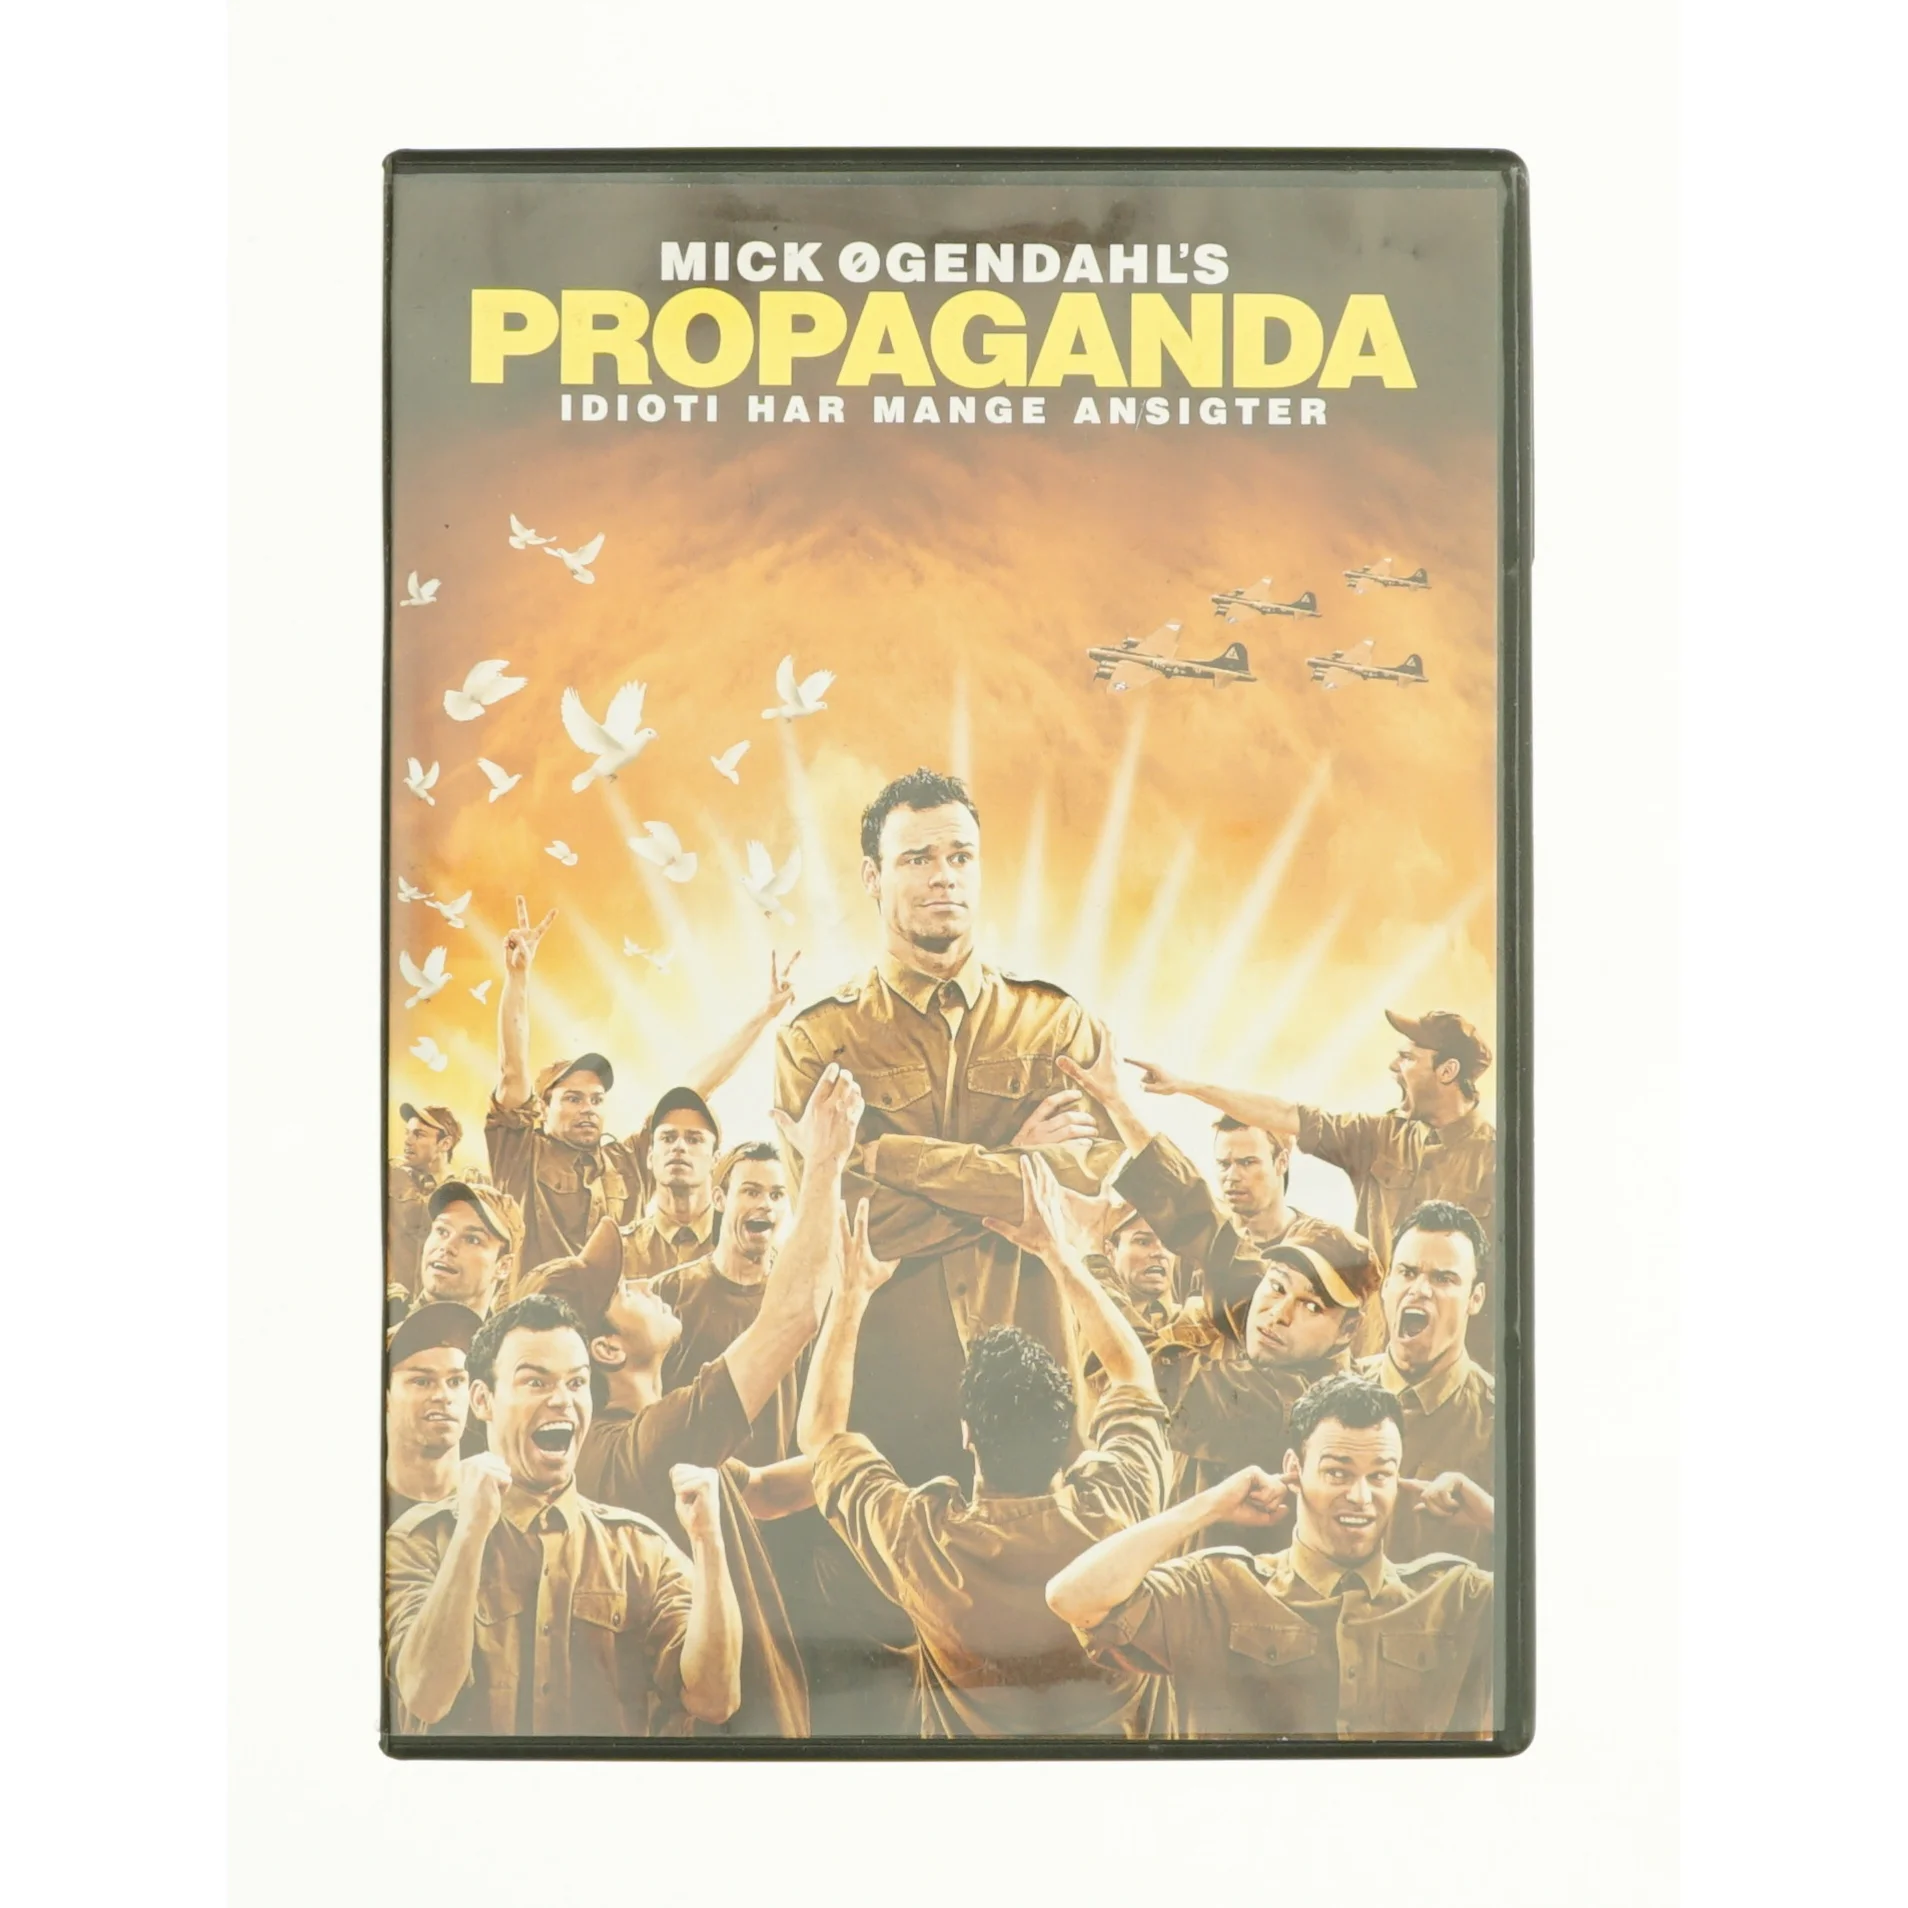 lommelygter gentage Tomhed Propaganda fra DVD | Orderly.shop